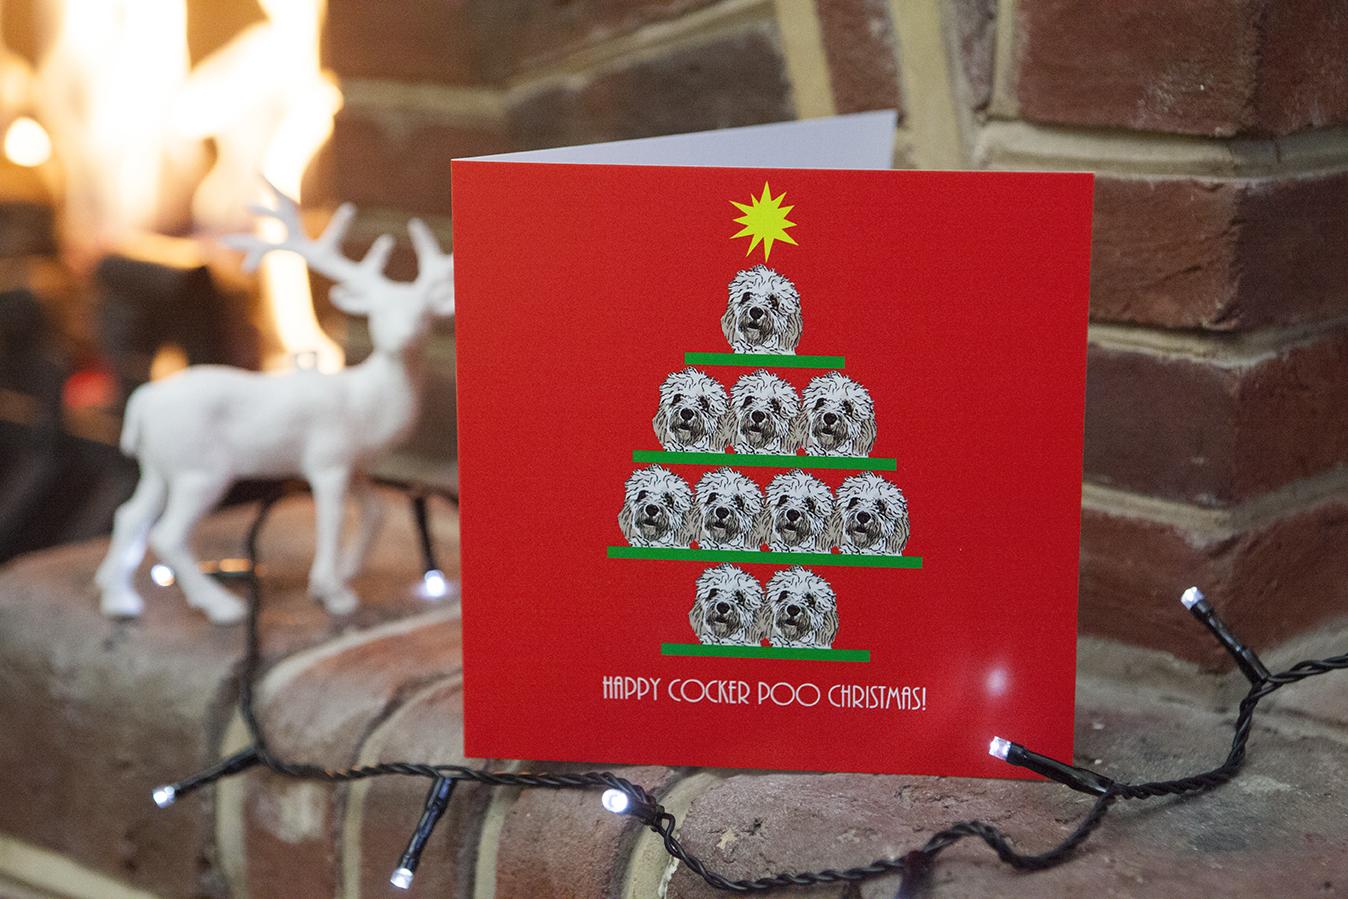 Cockerpoo Christmas Card